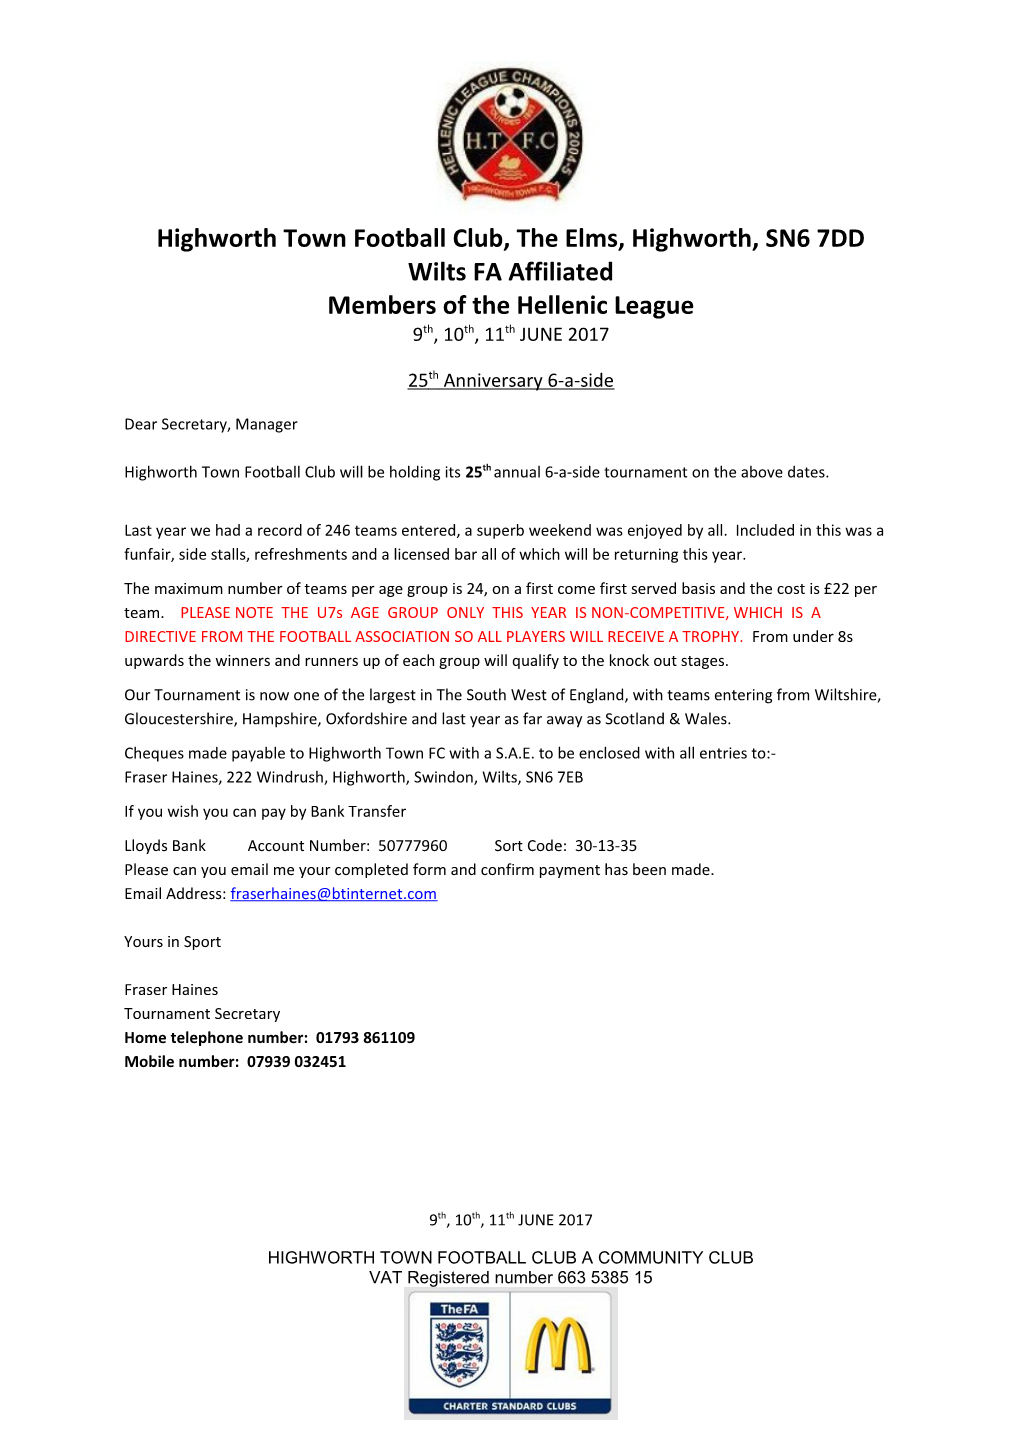 Highworth Town Football Club, the Elms, Highworth, SN6 7DD